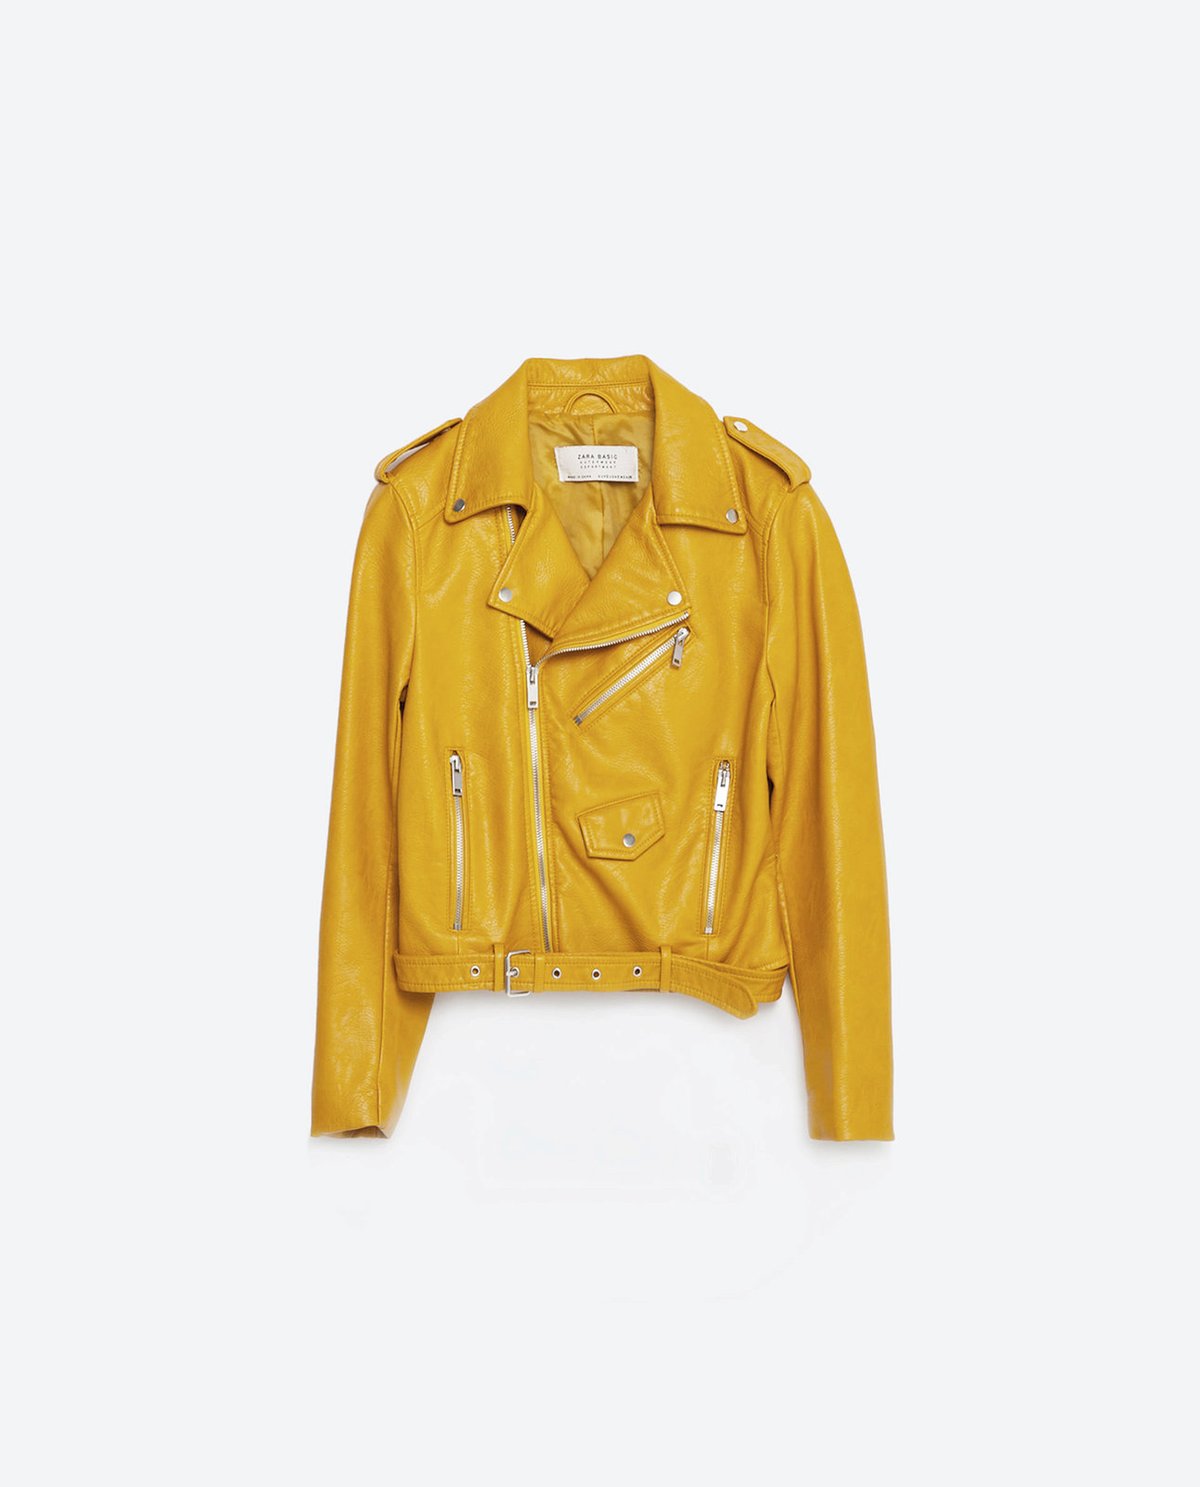 Způsob 5: Žlutá koženková bunda, Zara, 1299 Kč